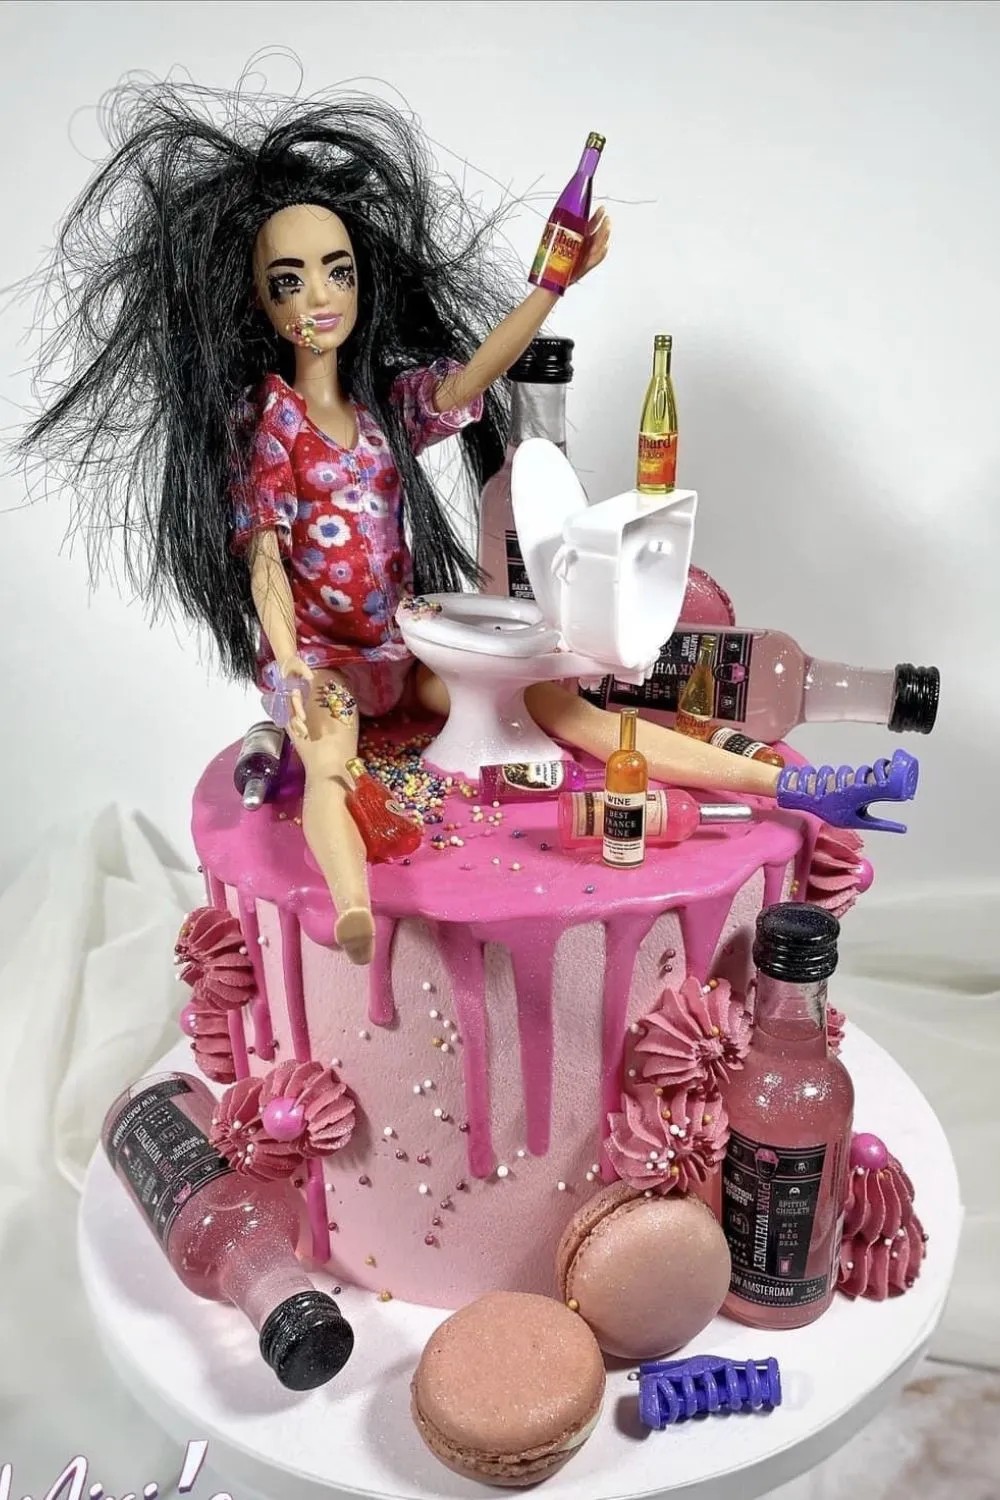 drunk-barbie-cake-jpg.5980495